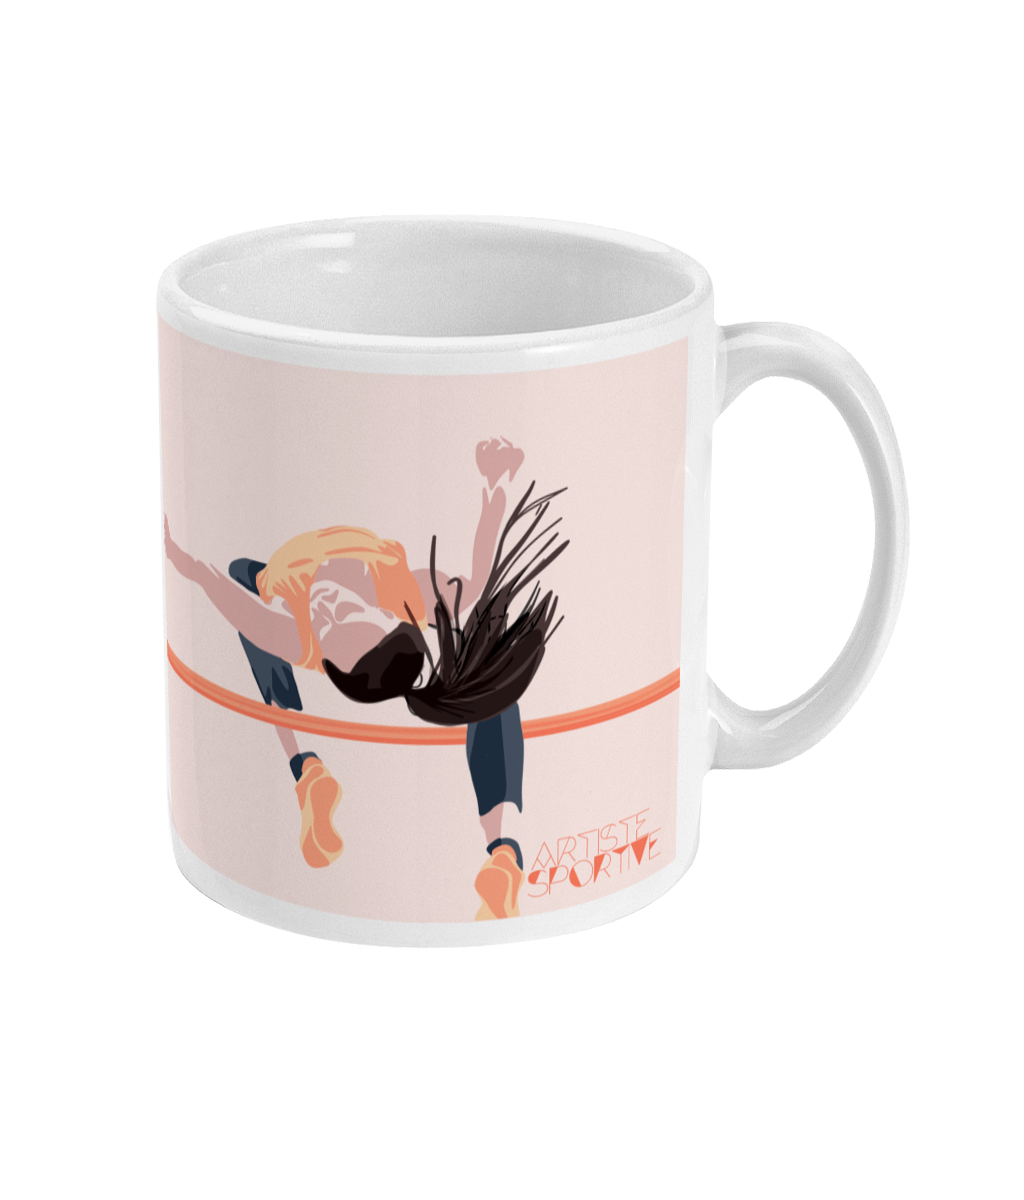 Tasse ou mug athlétisme "Saut hauteur femme" - Personnalisable